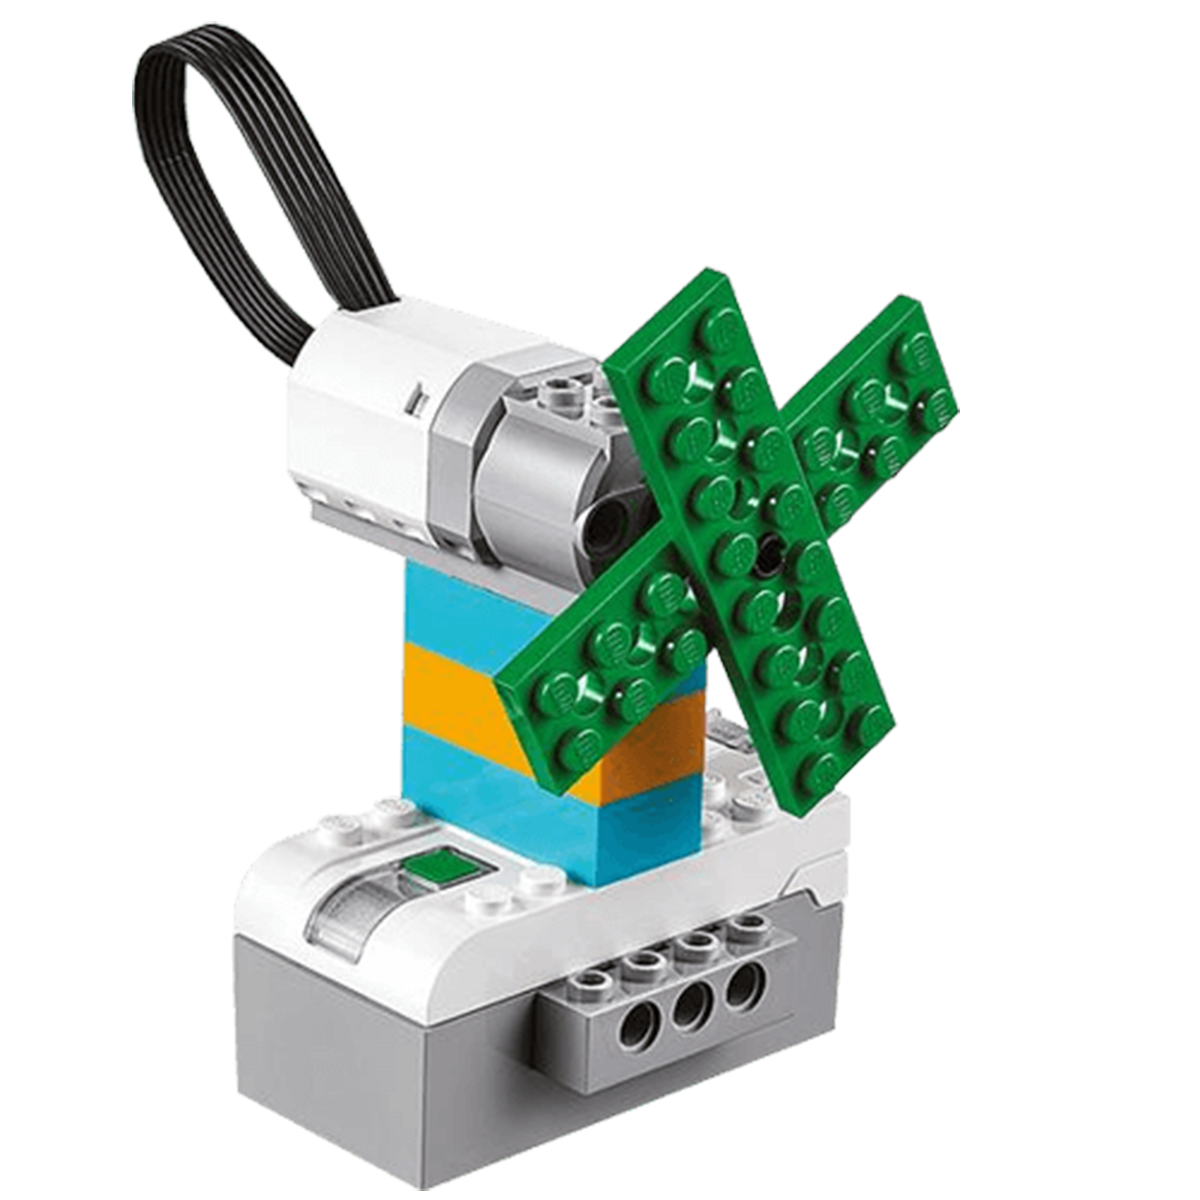 Lego wedo 2.0. Proyectos. 2.º Primaria